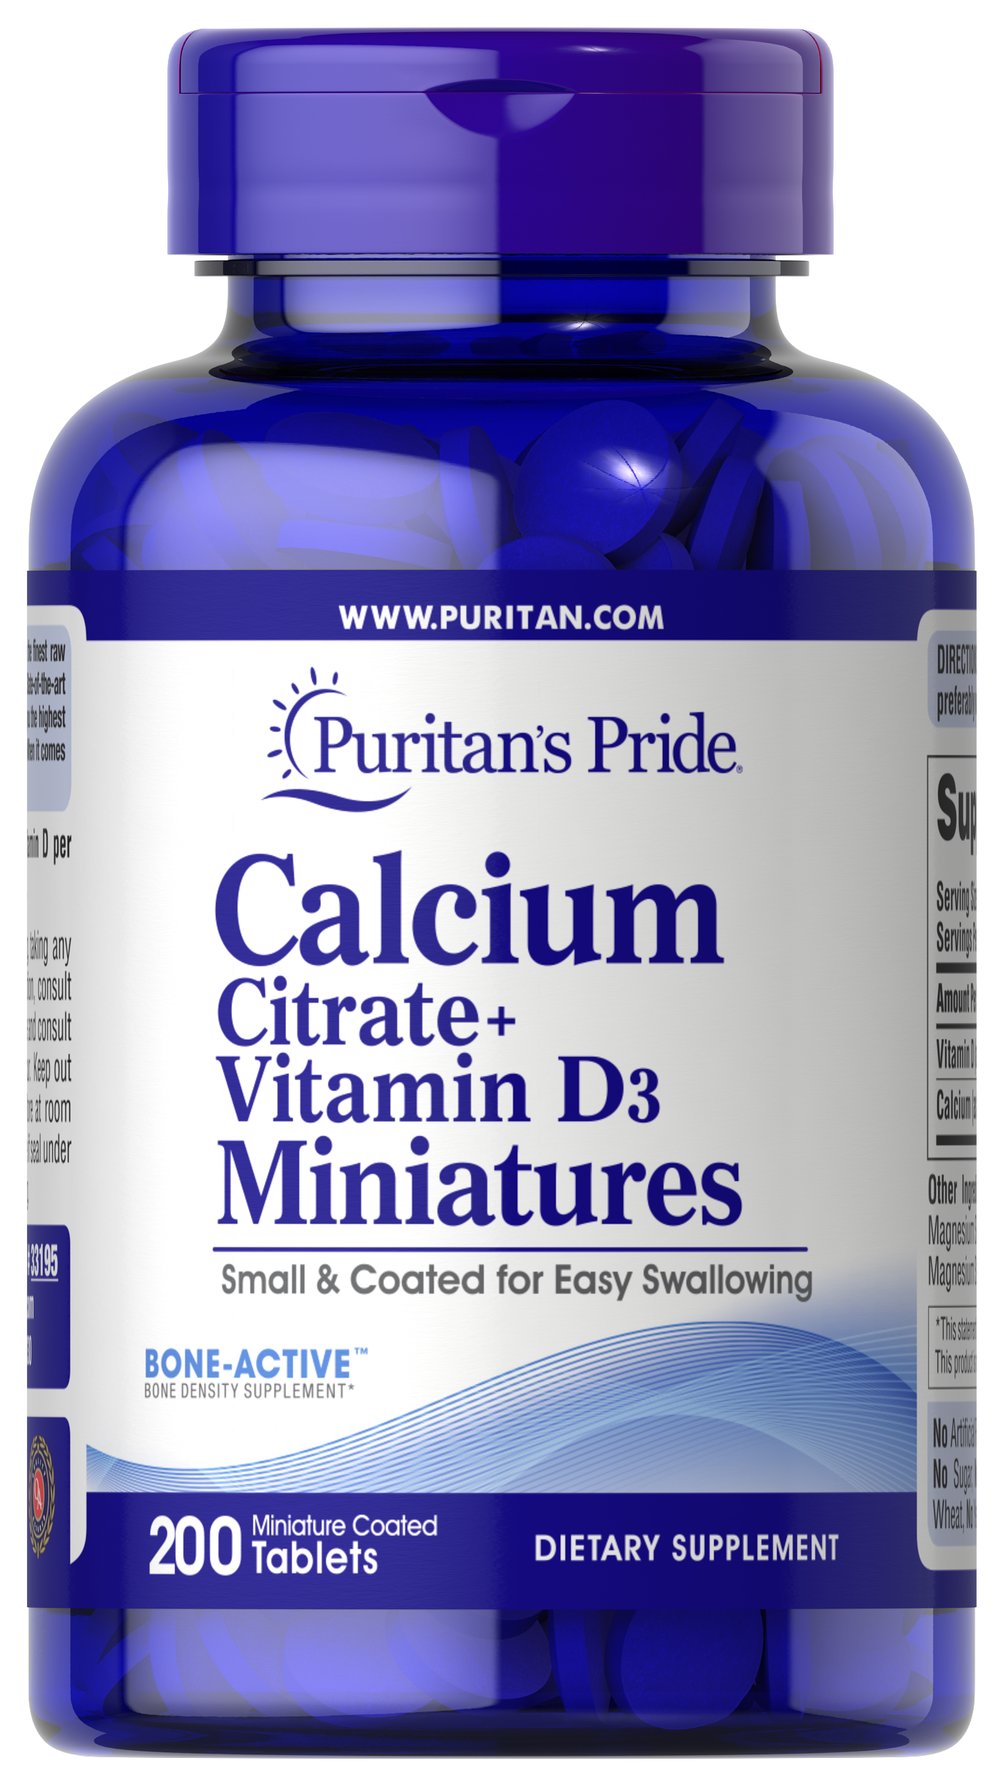  Calcium Citrate + Vitamin D3 Miniatures 檸檬酸鈣 + 維生素D3